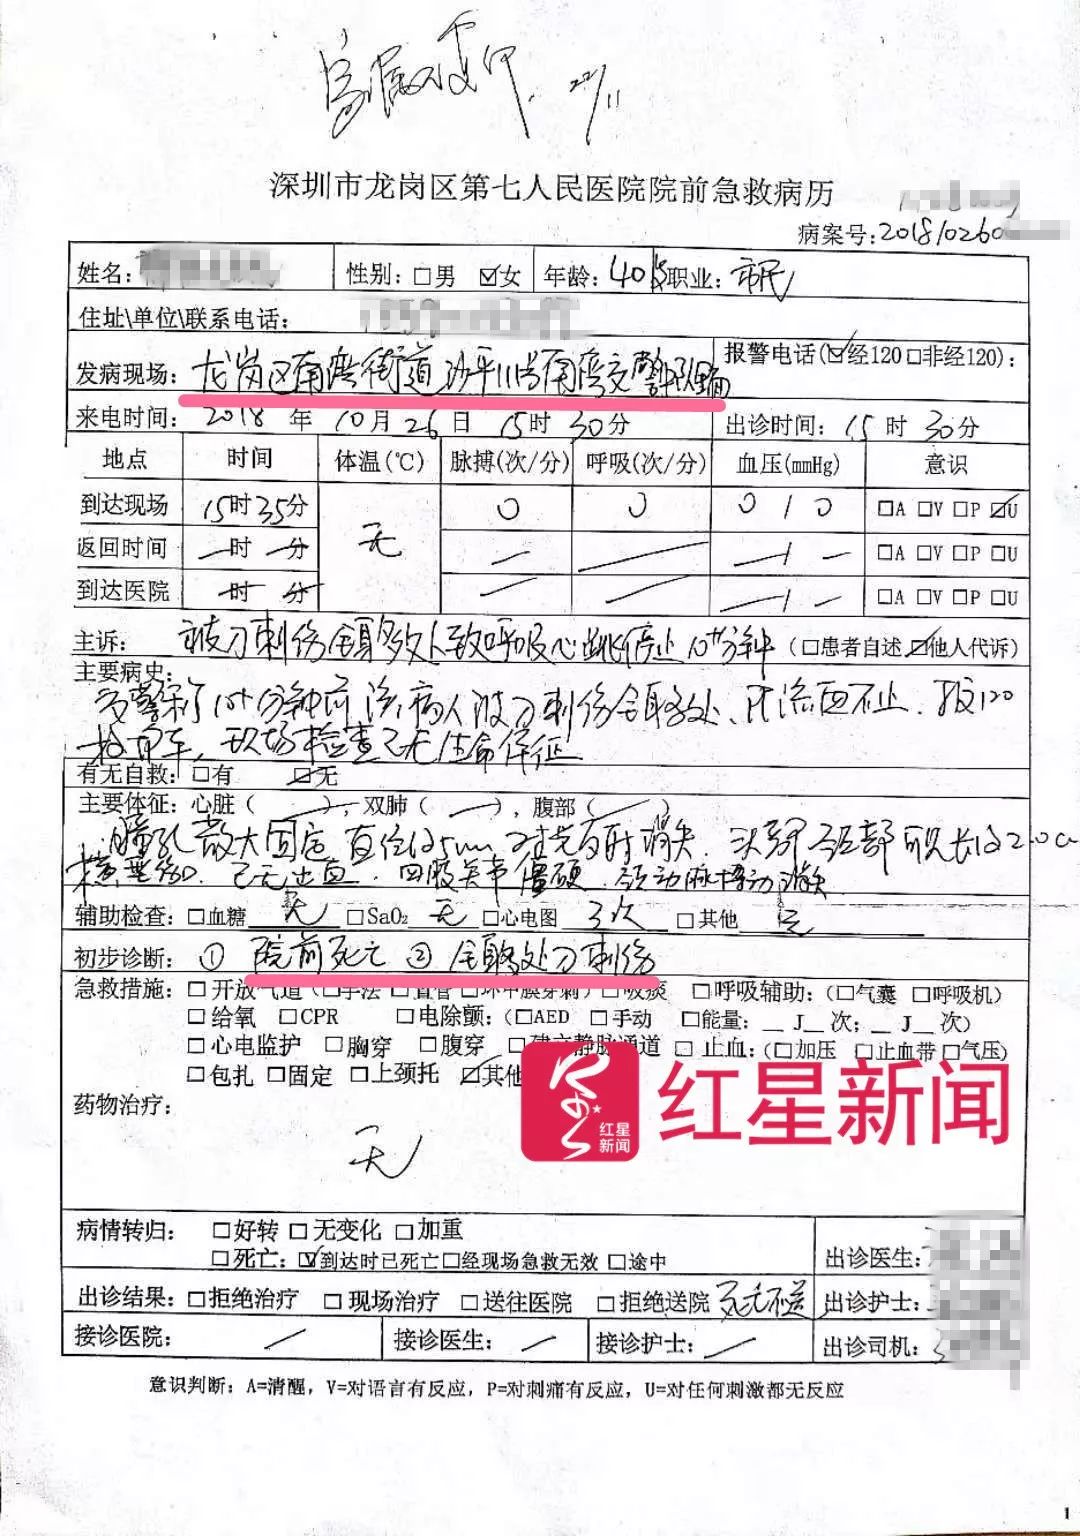 急救病历显示,刘雨辰全身多处刀刺伤"院前死亡,发病现场为"南湾